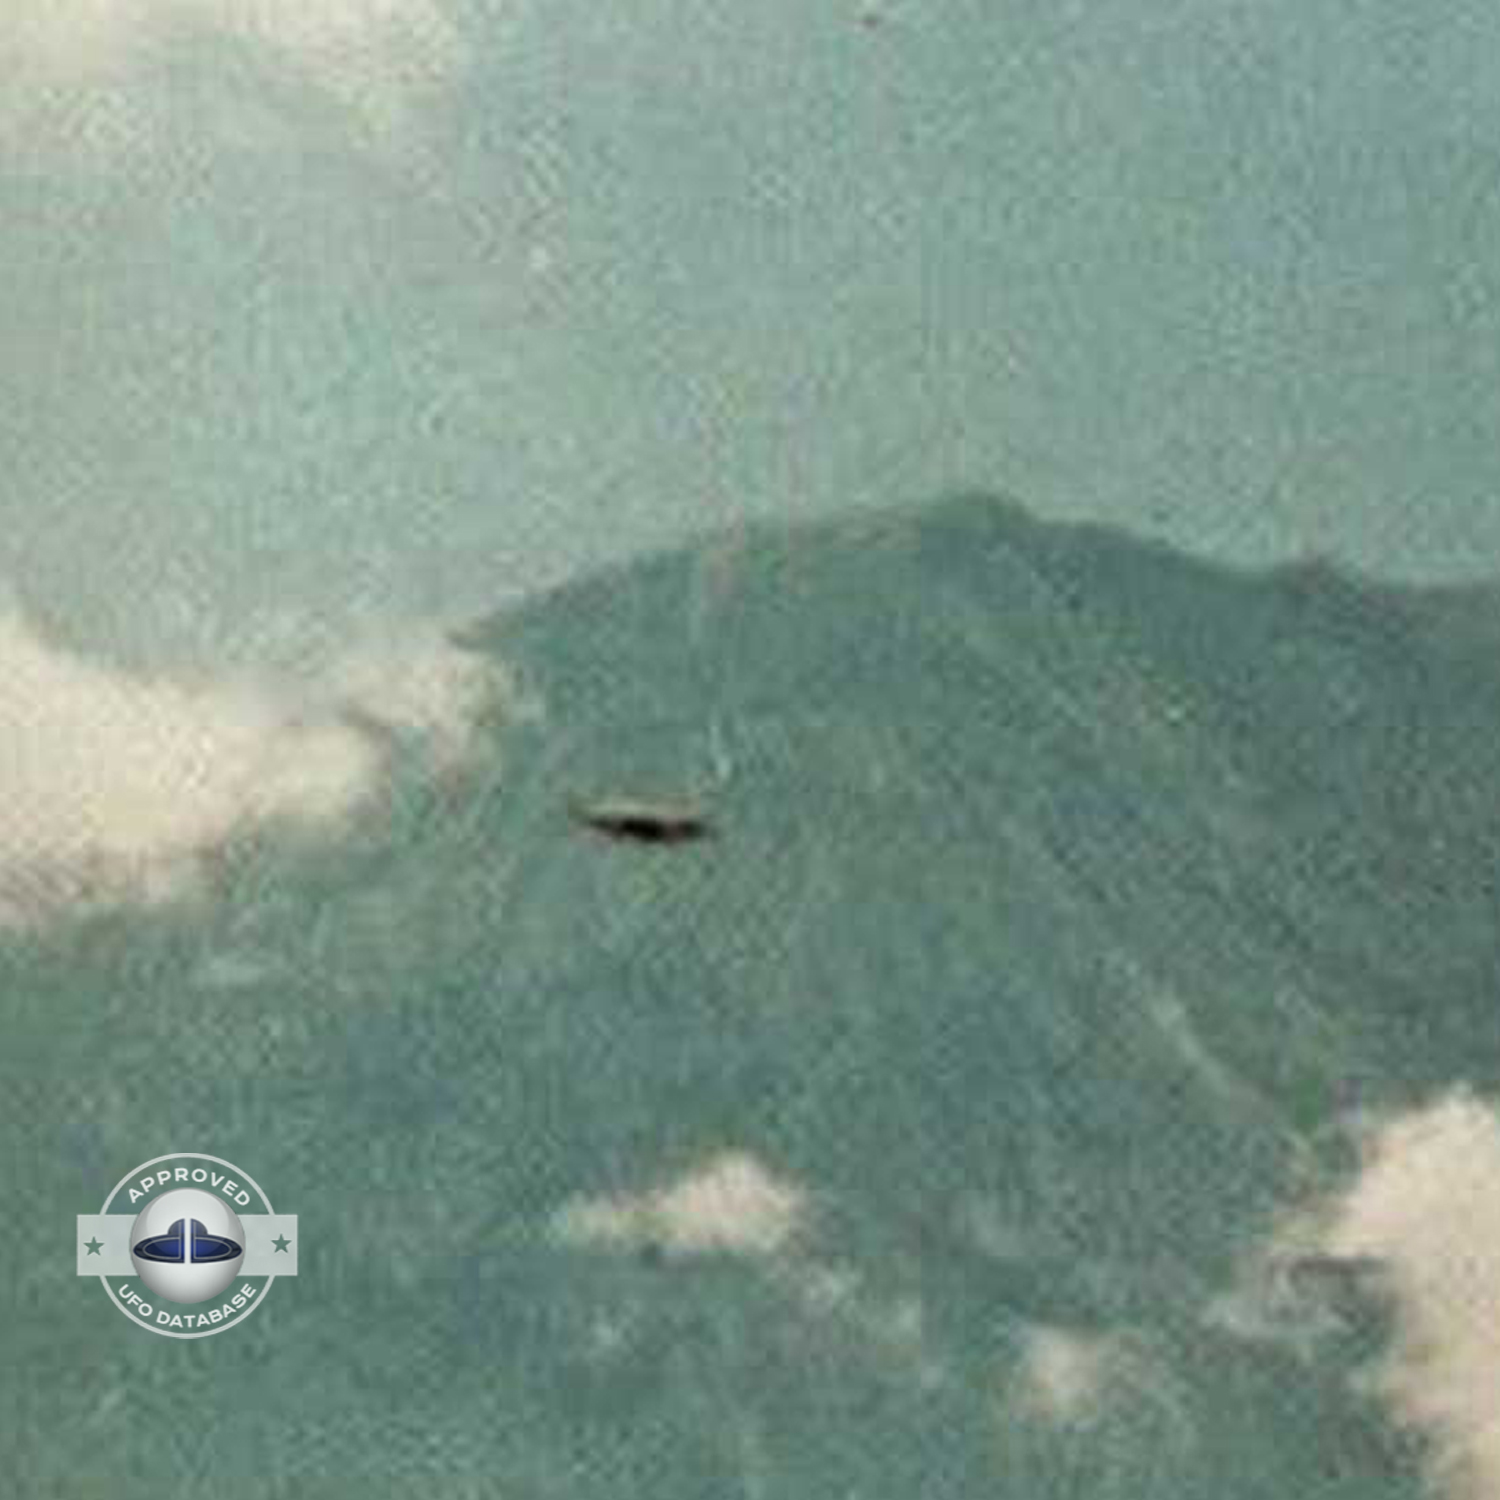 UFO Picture - UFO in Bali island, Indonesia - UFO Picture 1973 UFO Picture #38-3